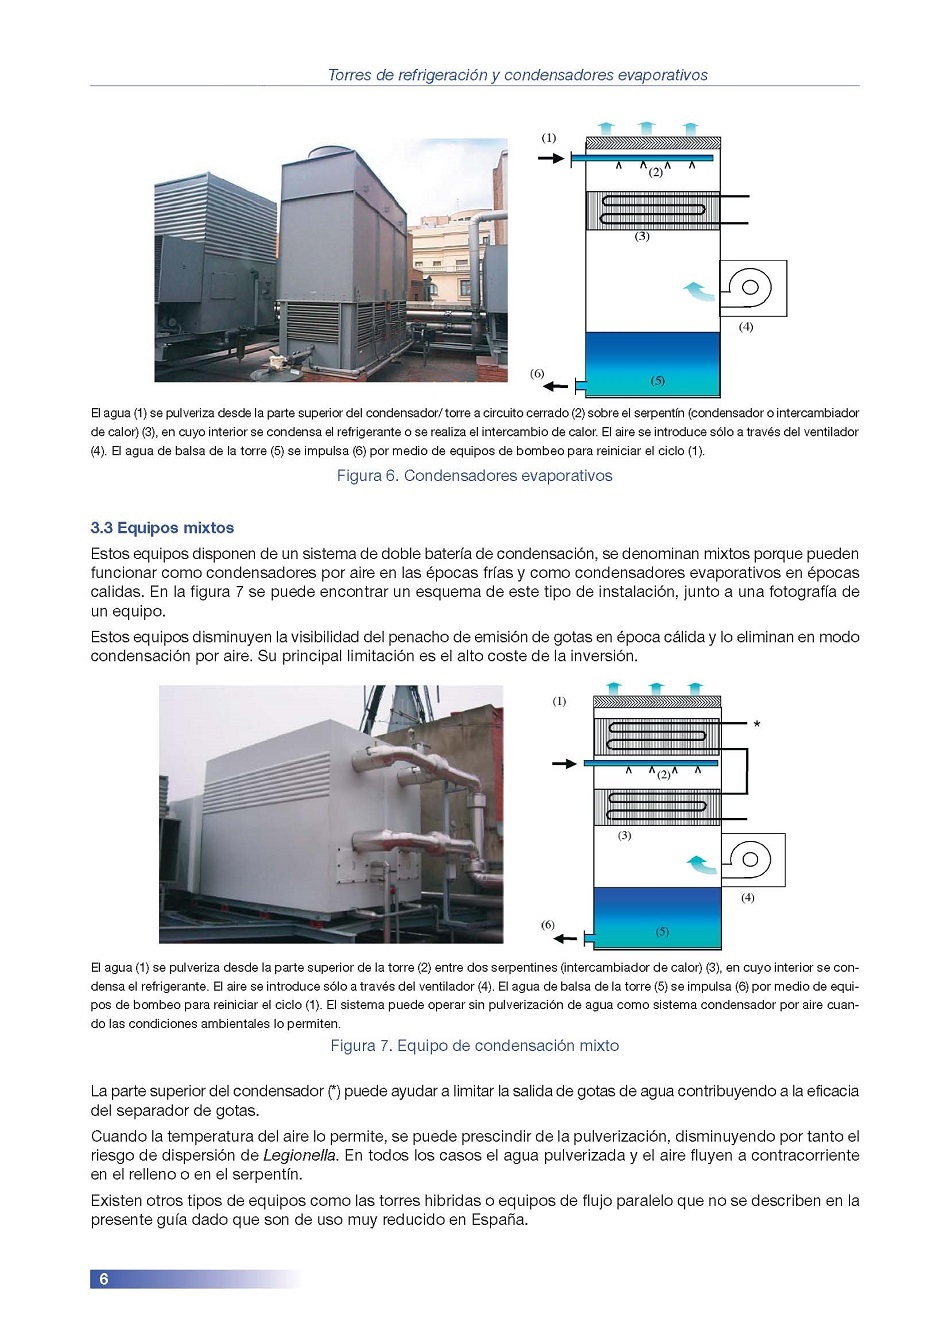 Torres de Refrigeración y Condensadores Evaporativos. Página 06